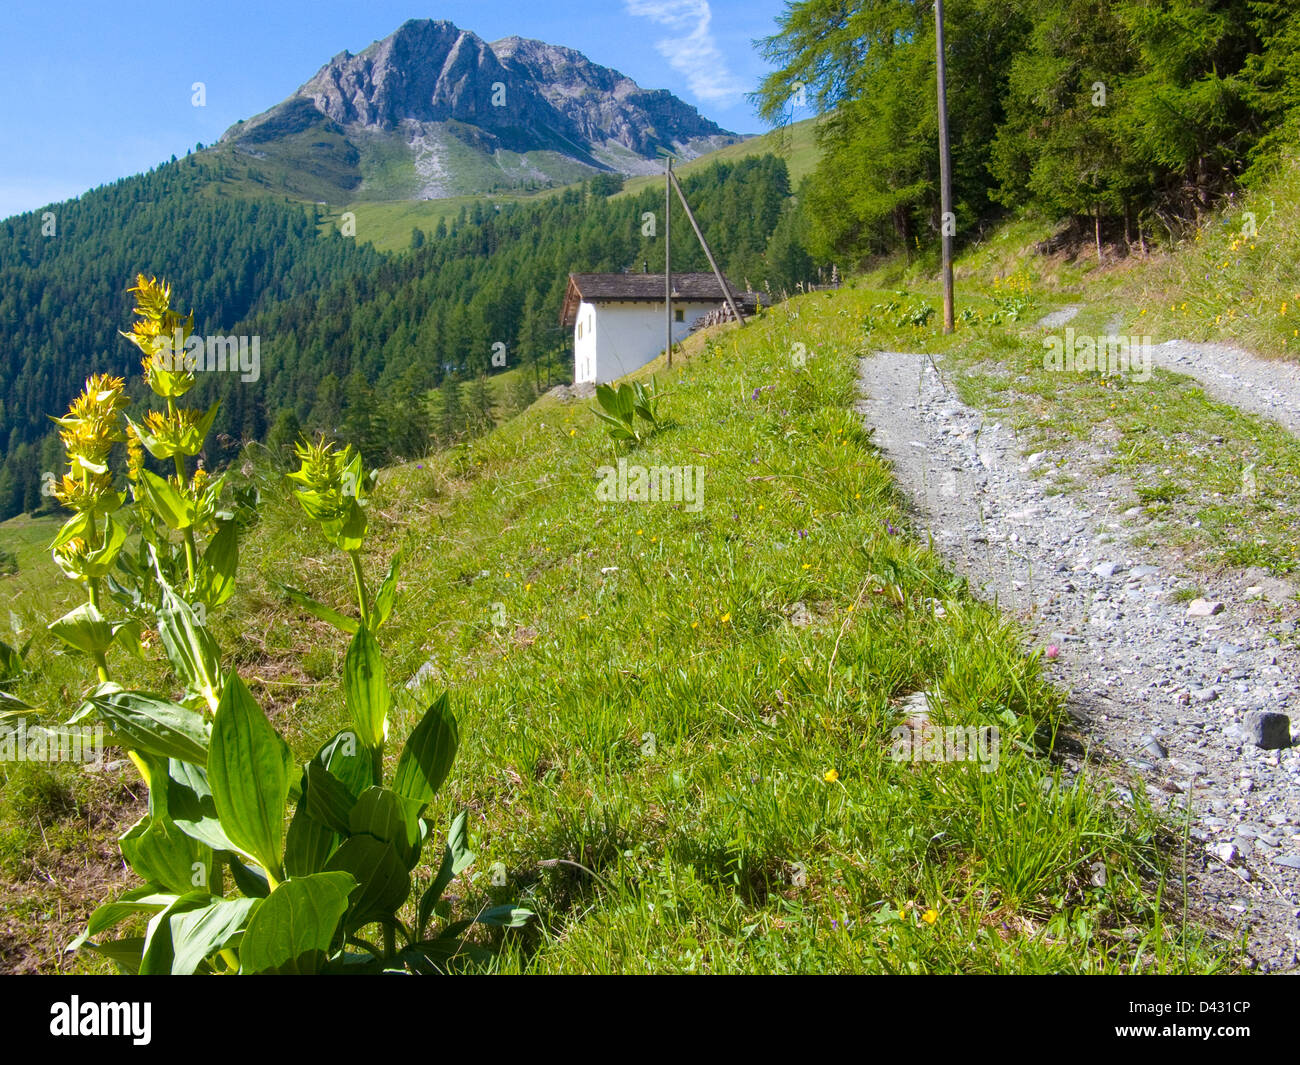 le chapelet,liddes,valais,suisse Stock Photo